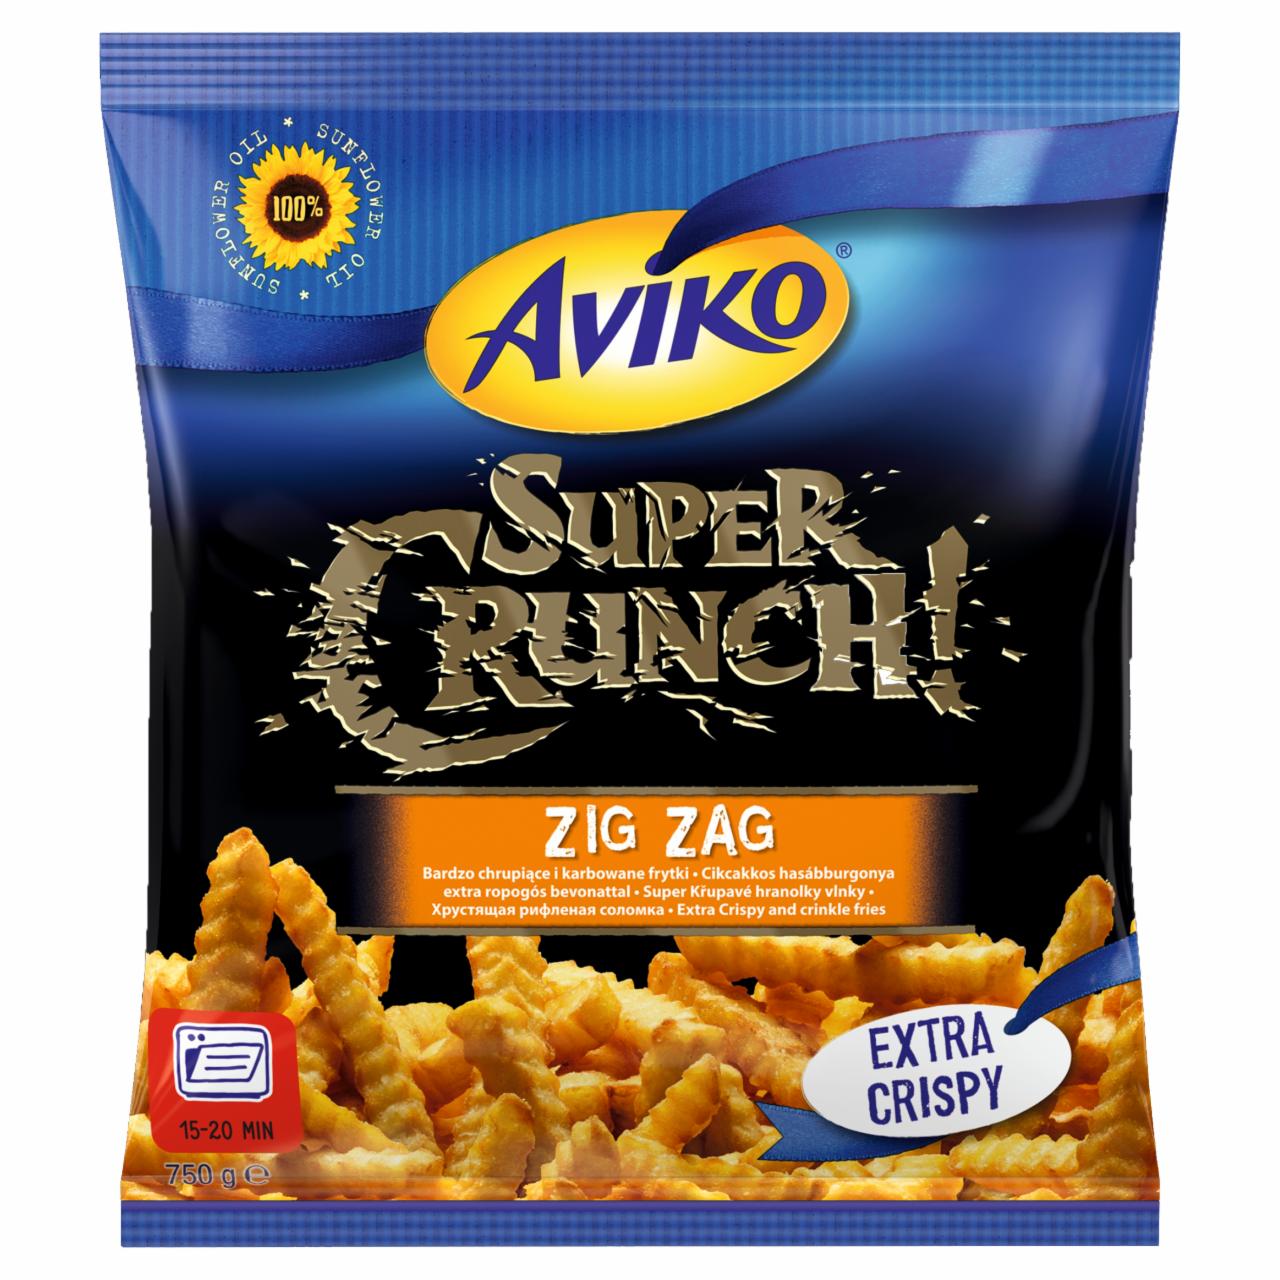 Zdjęcia - Aviko Super Crunch Zig Zag Bardzo chrupiące i karbowane frytki 750 g